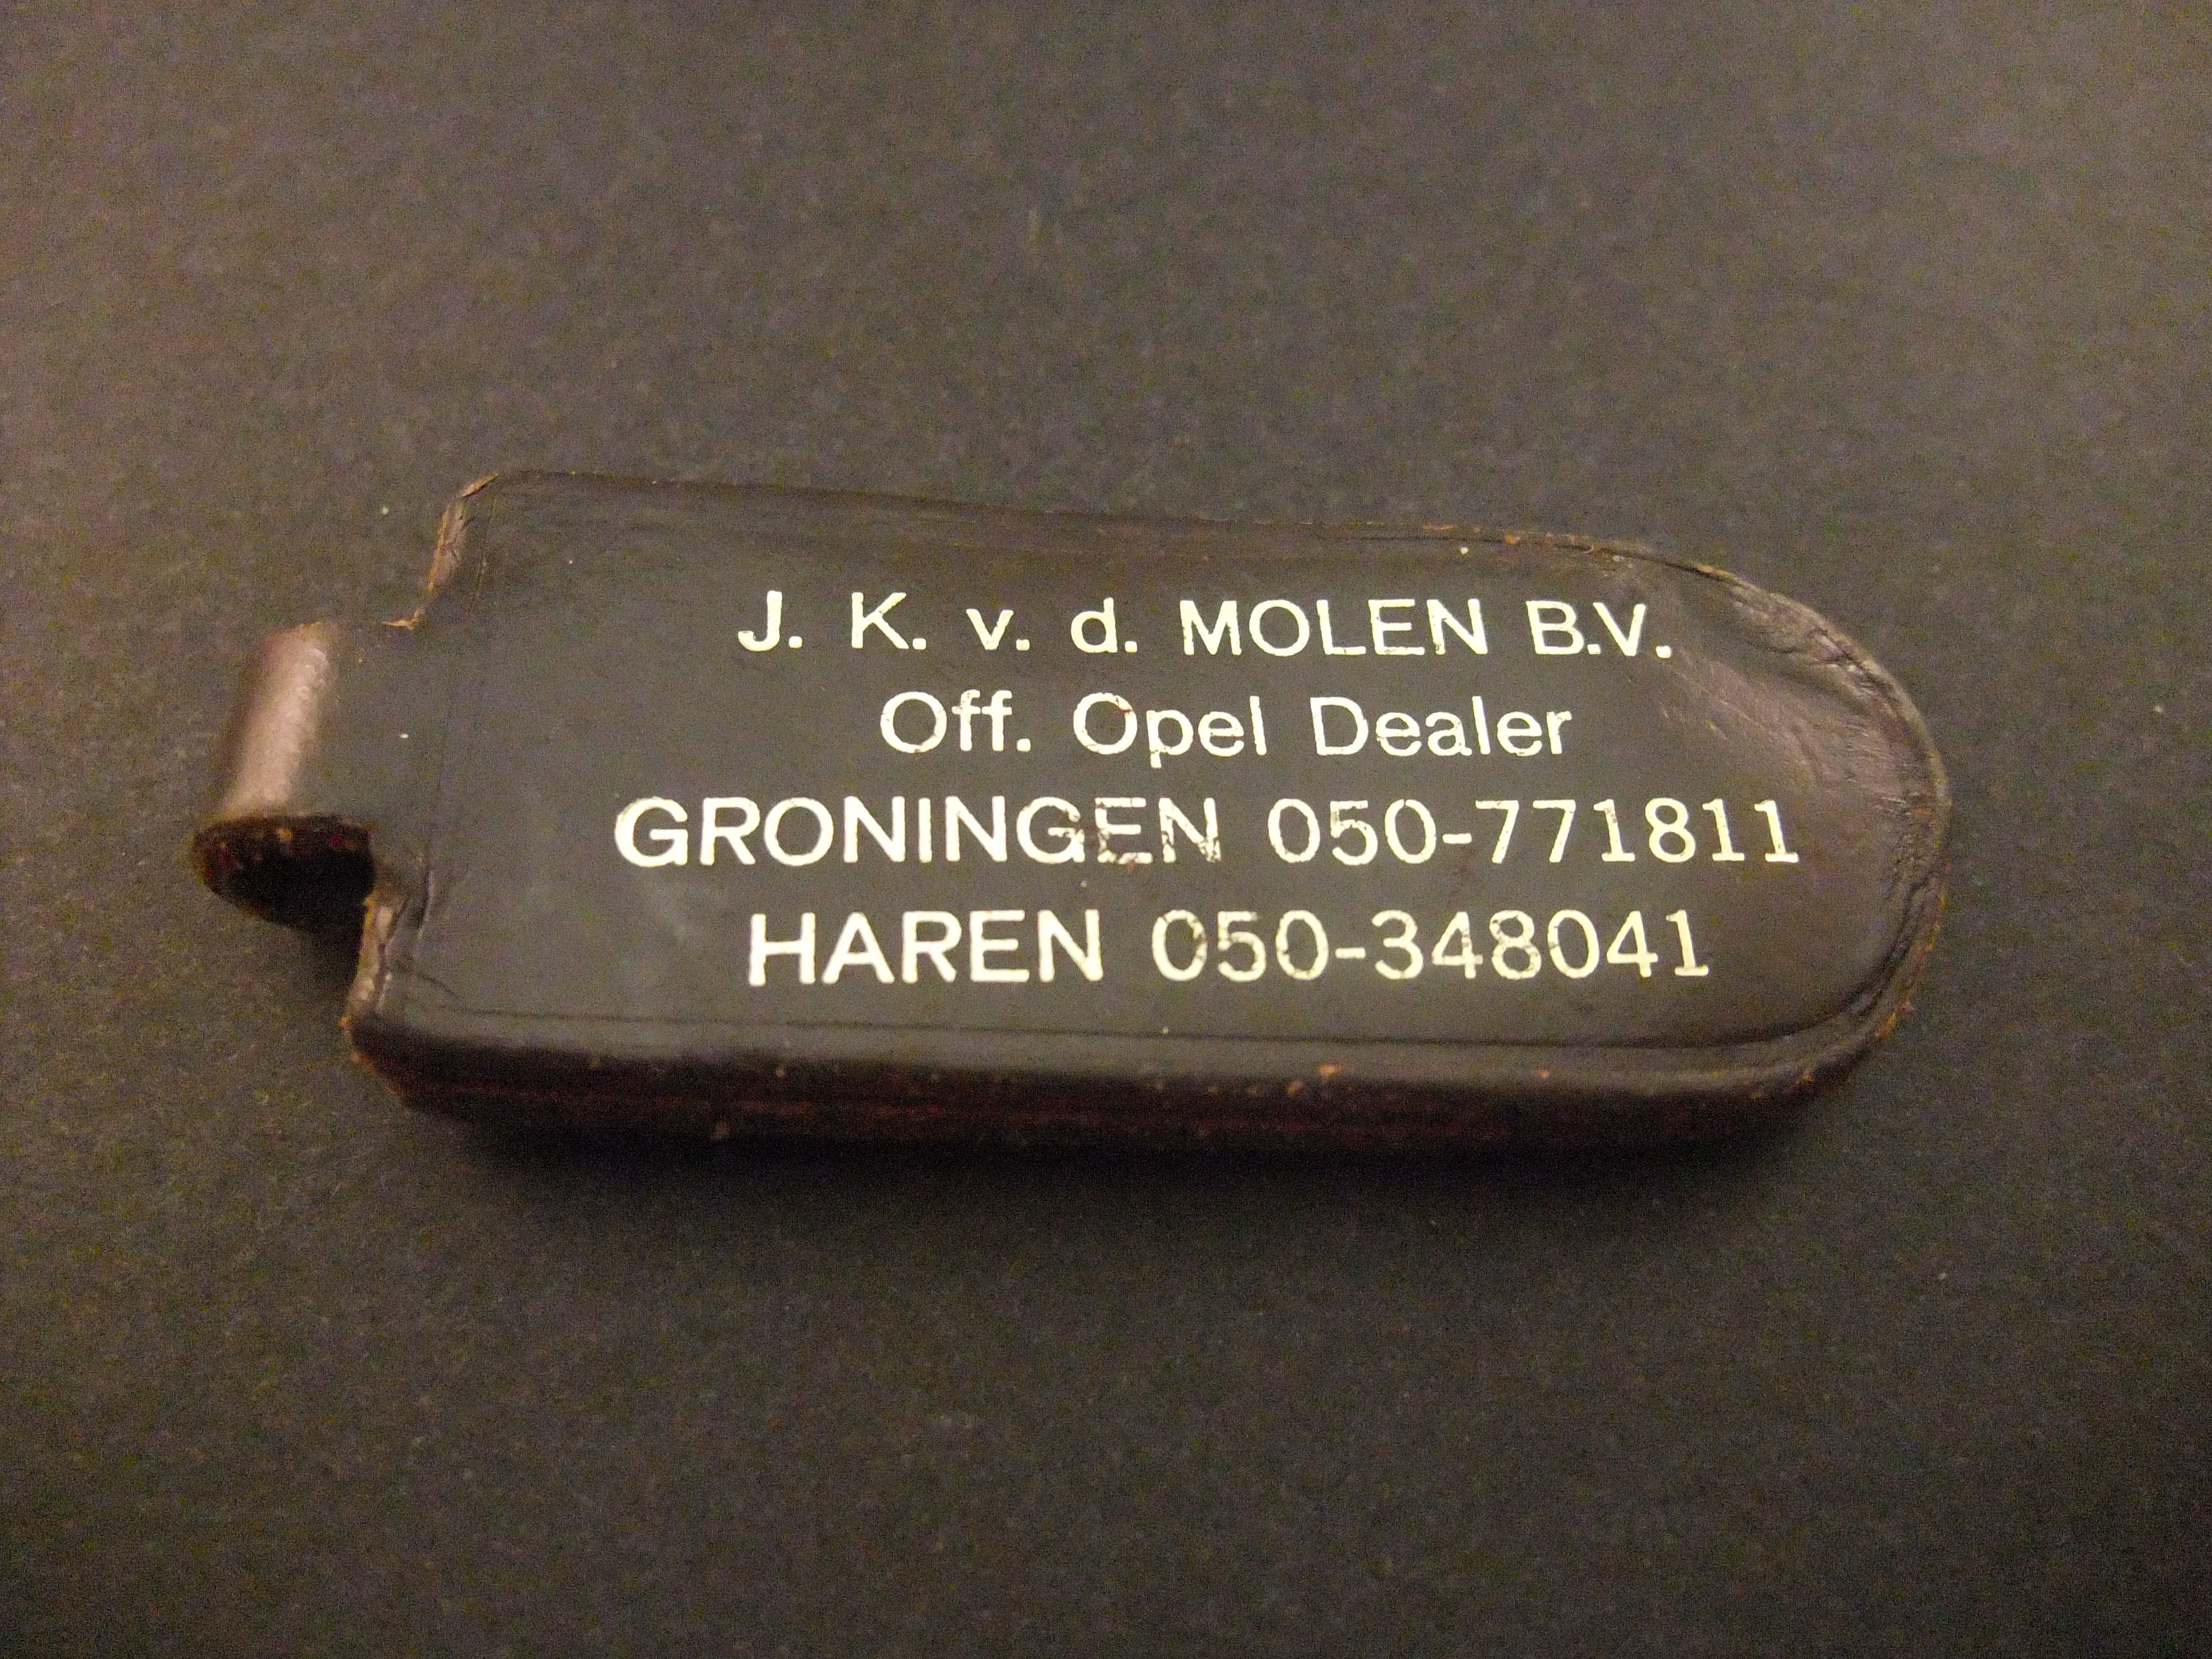 Opel dealer J.K. v.d. Molen Groningen, Haren sleutelhanger (2)